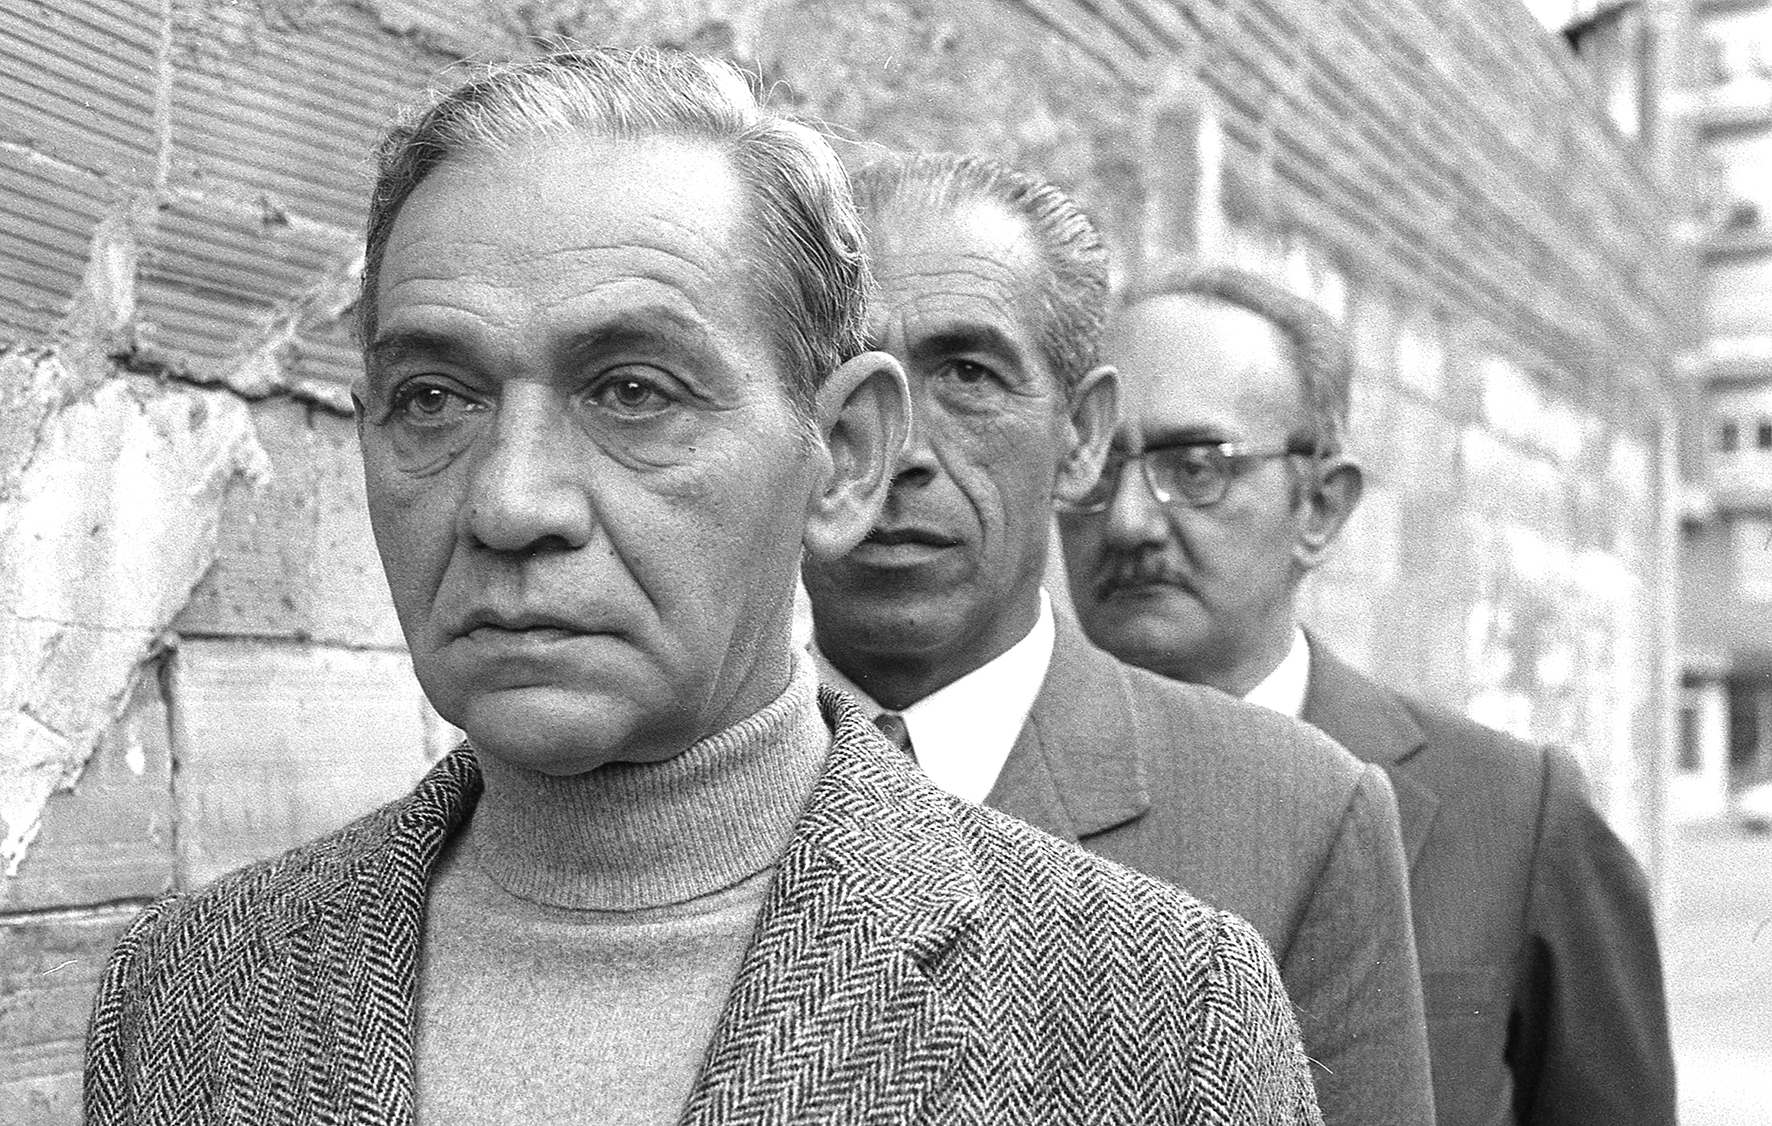 4 ex deportats catalans als camps nazis (Pilar Aymerich, 1972)